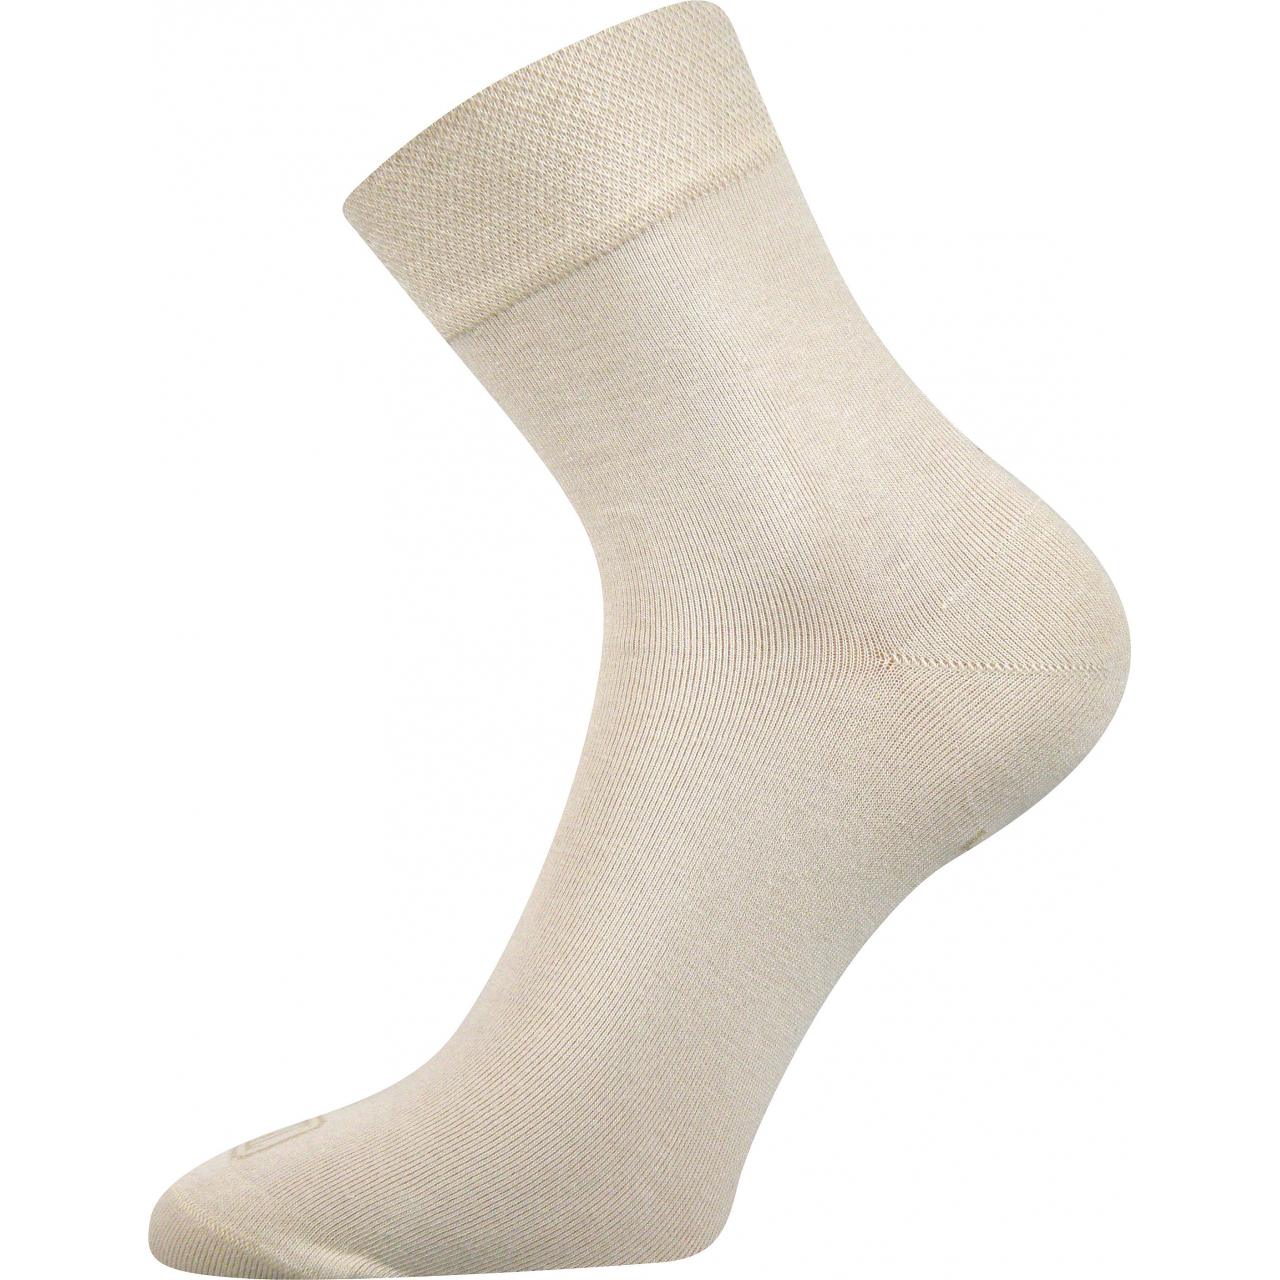 Ponožky dámské Lonka Fanera - béžové, 39-42